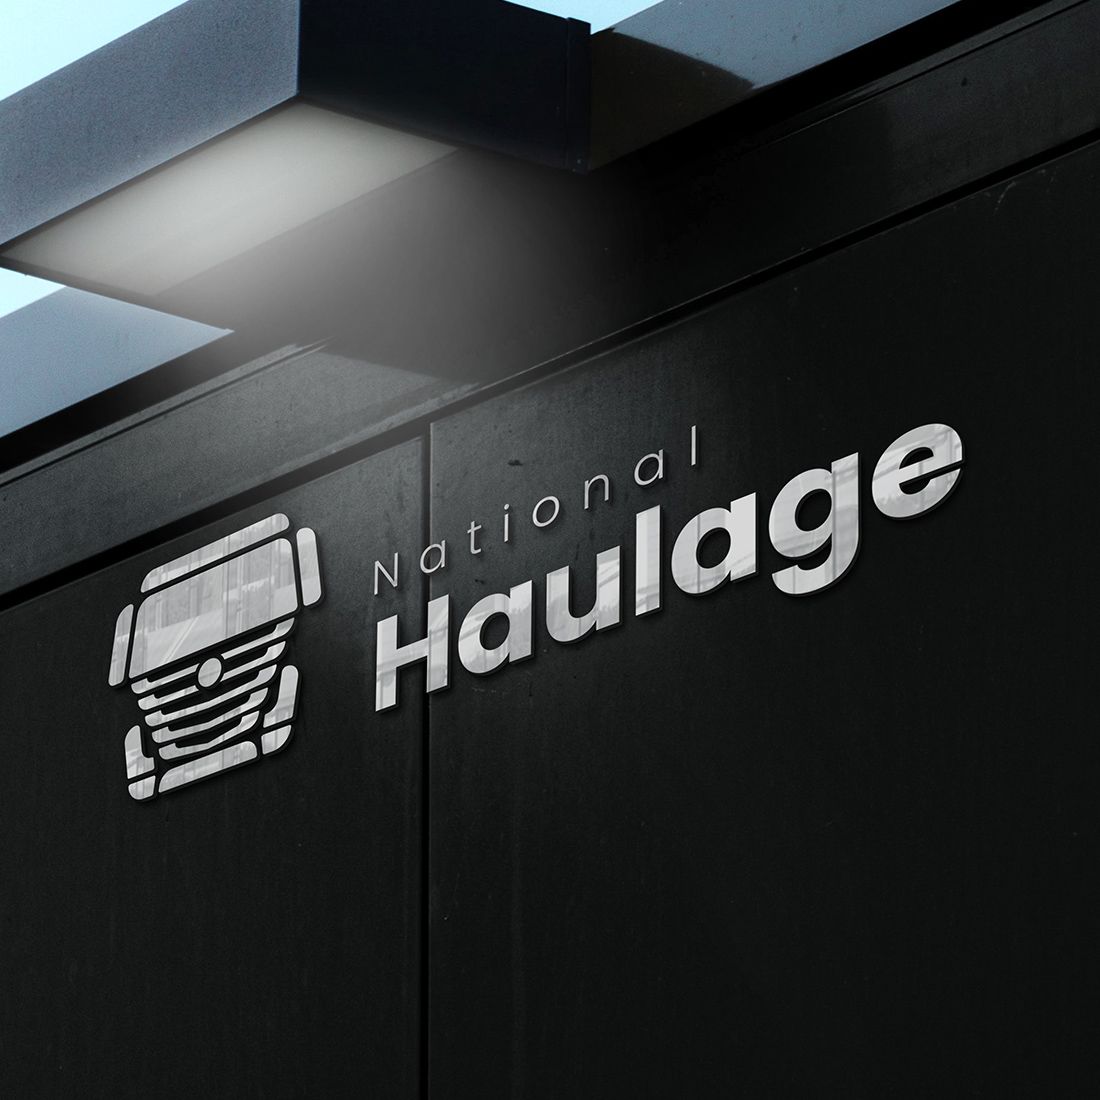 National Haulage Logo mockup example.